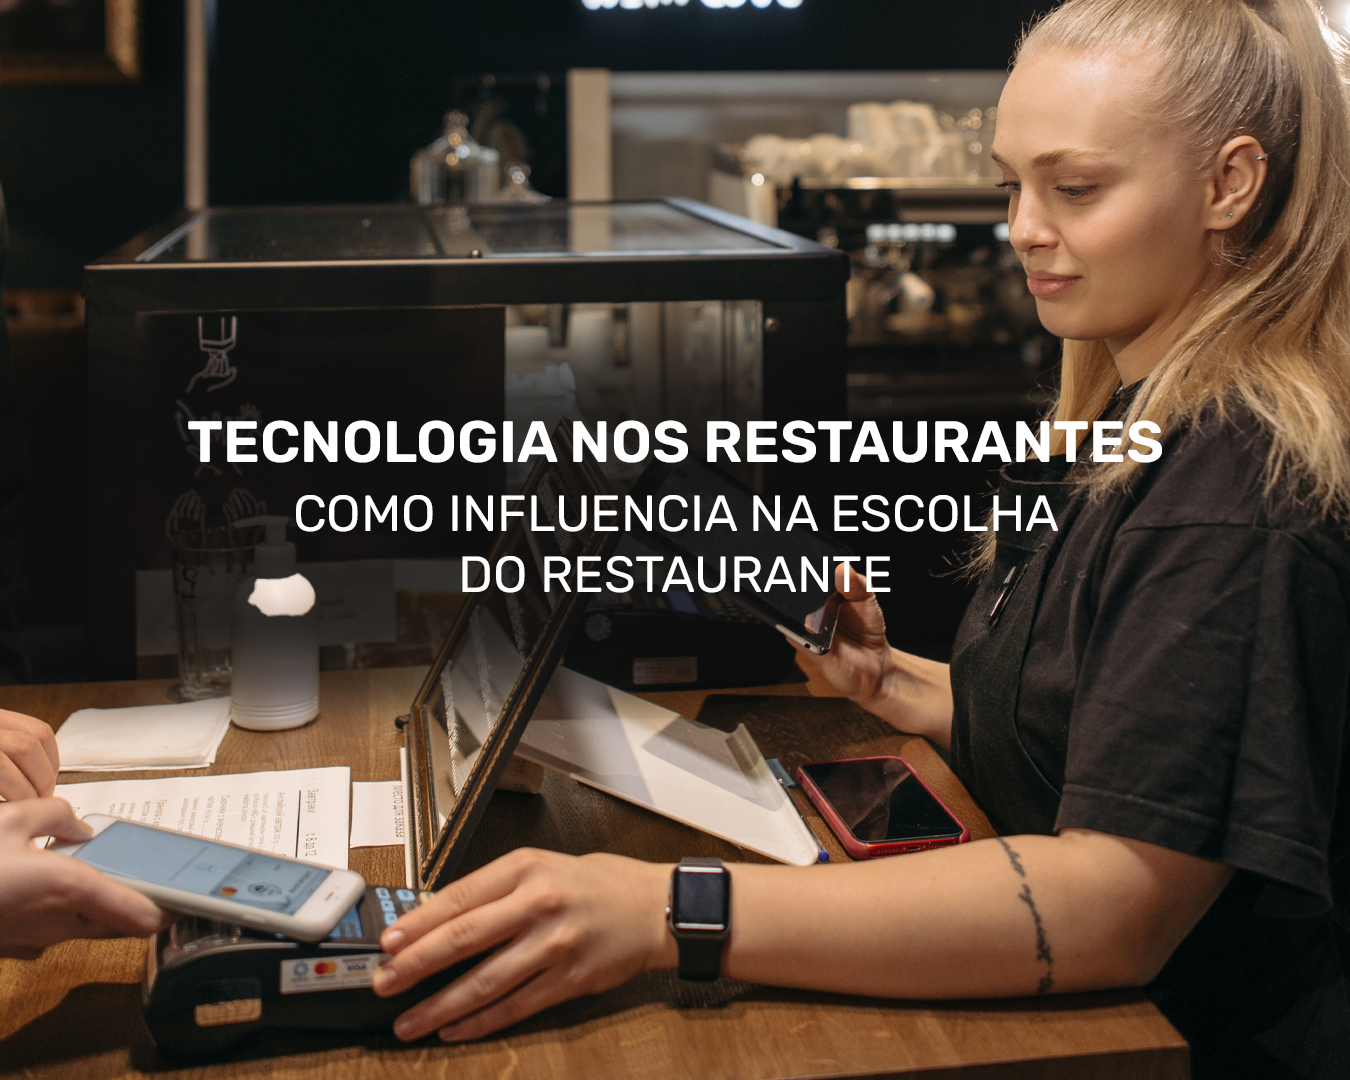 Tecnologia nos restaurantes: como influencia na escolha do restaurante